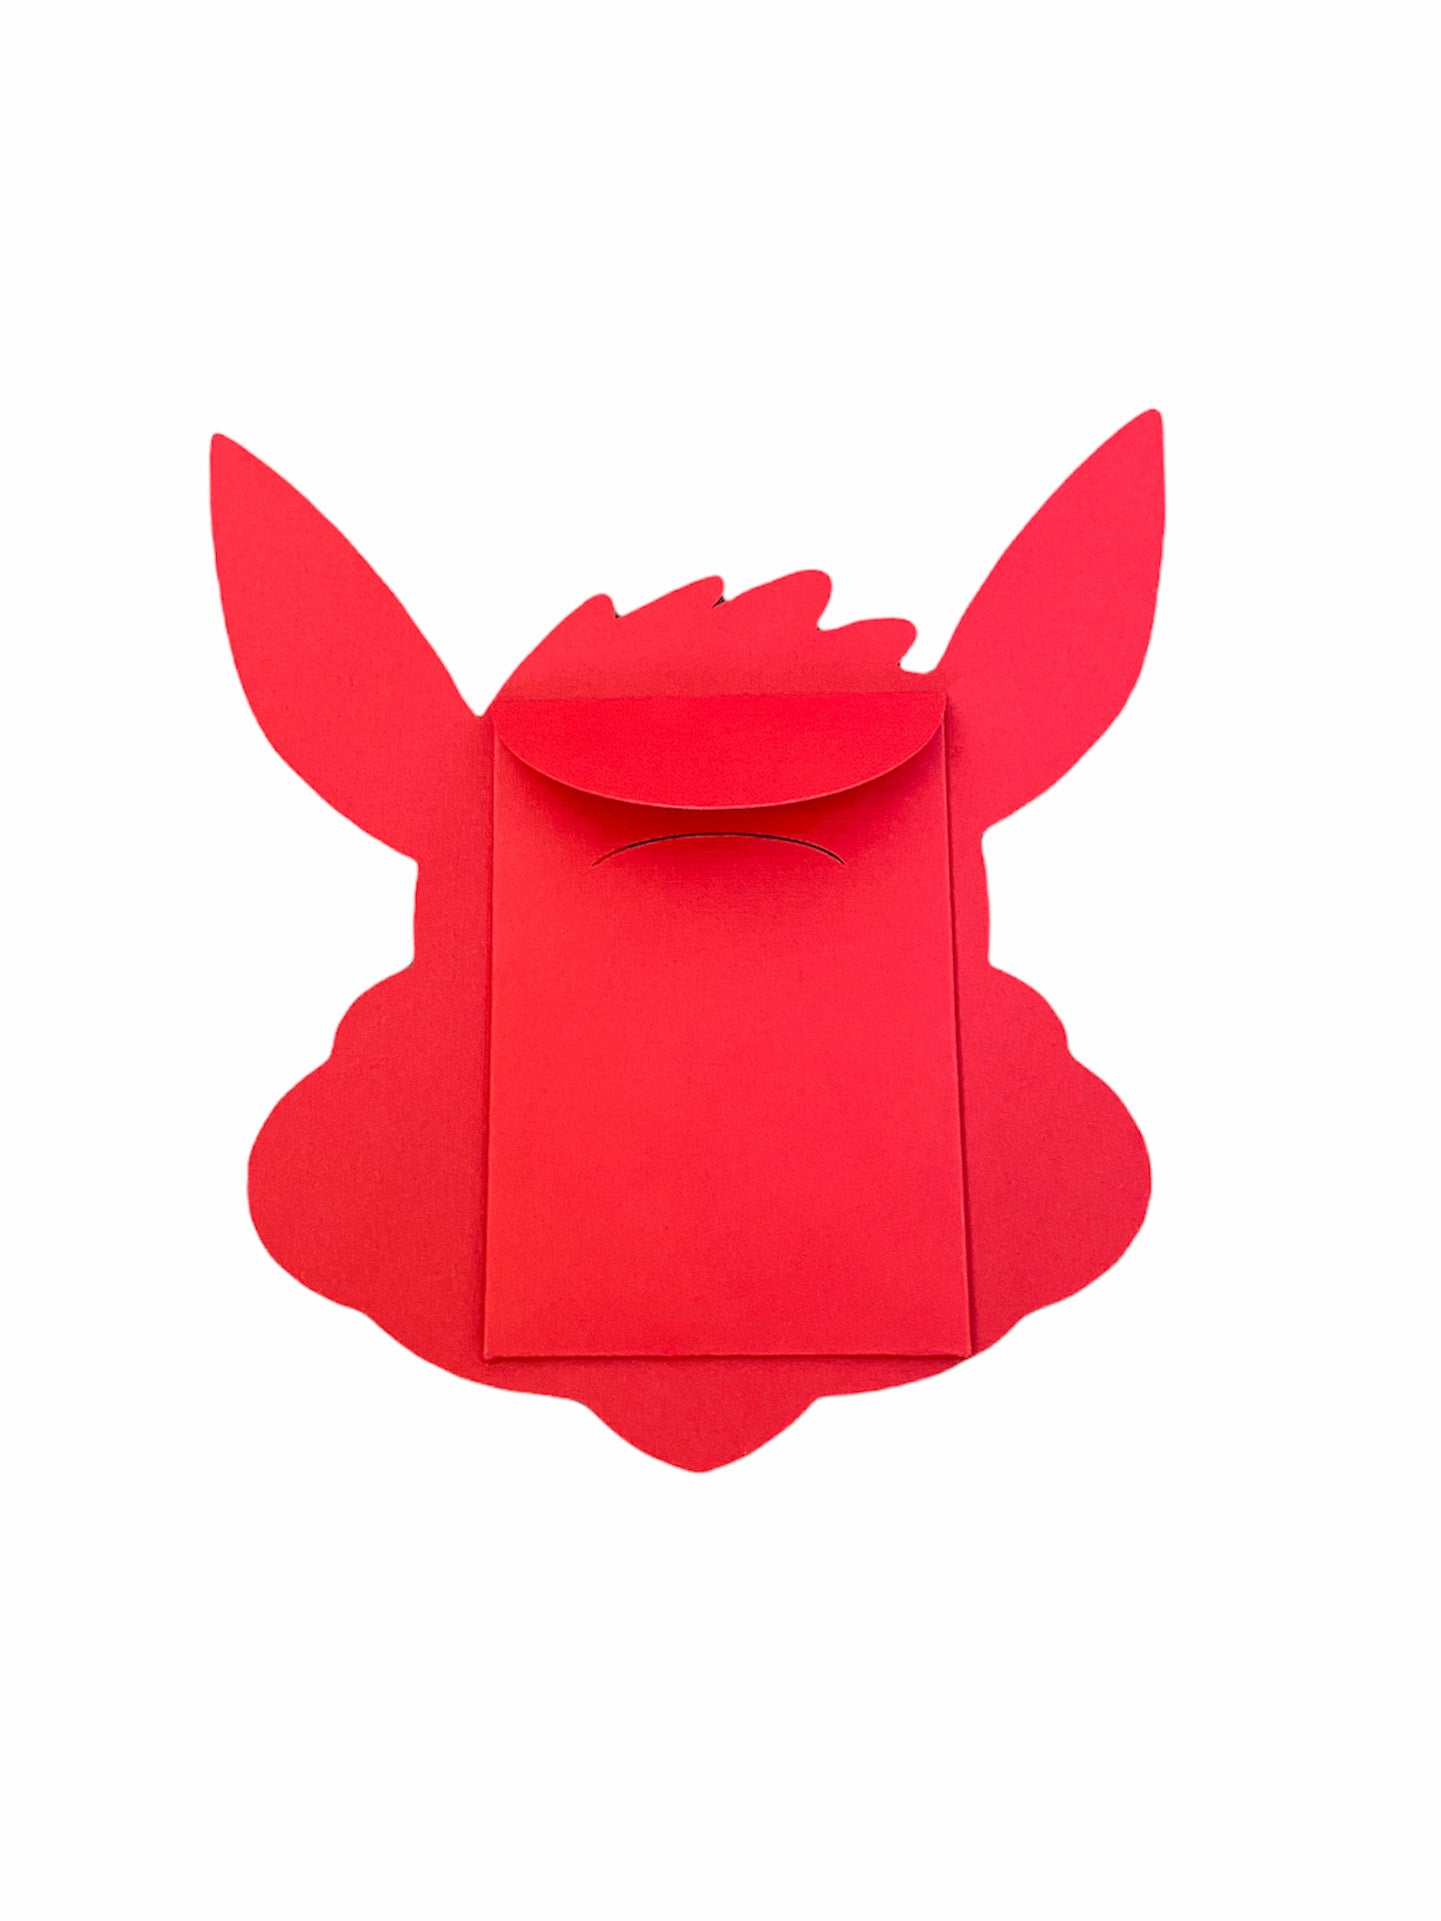 Chunkémon Eevee Red Envelope